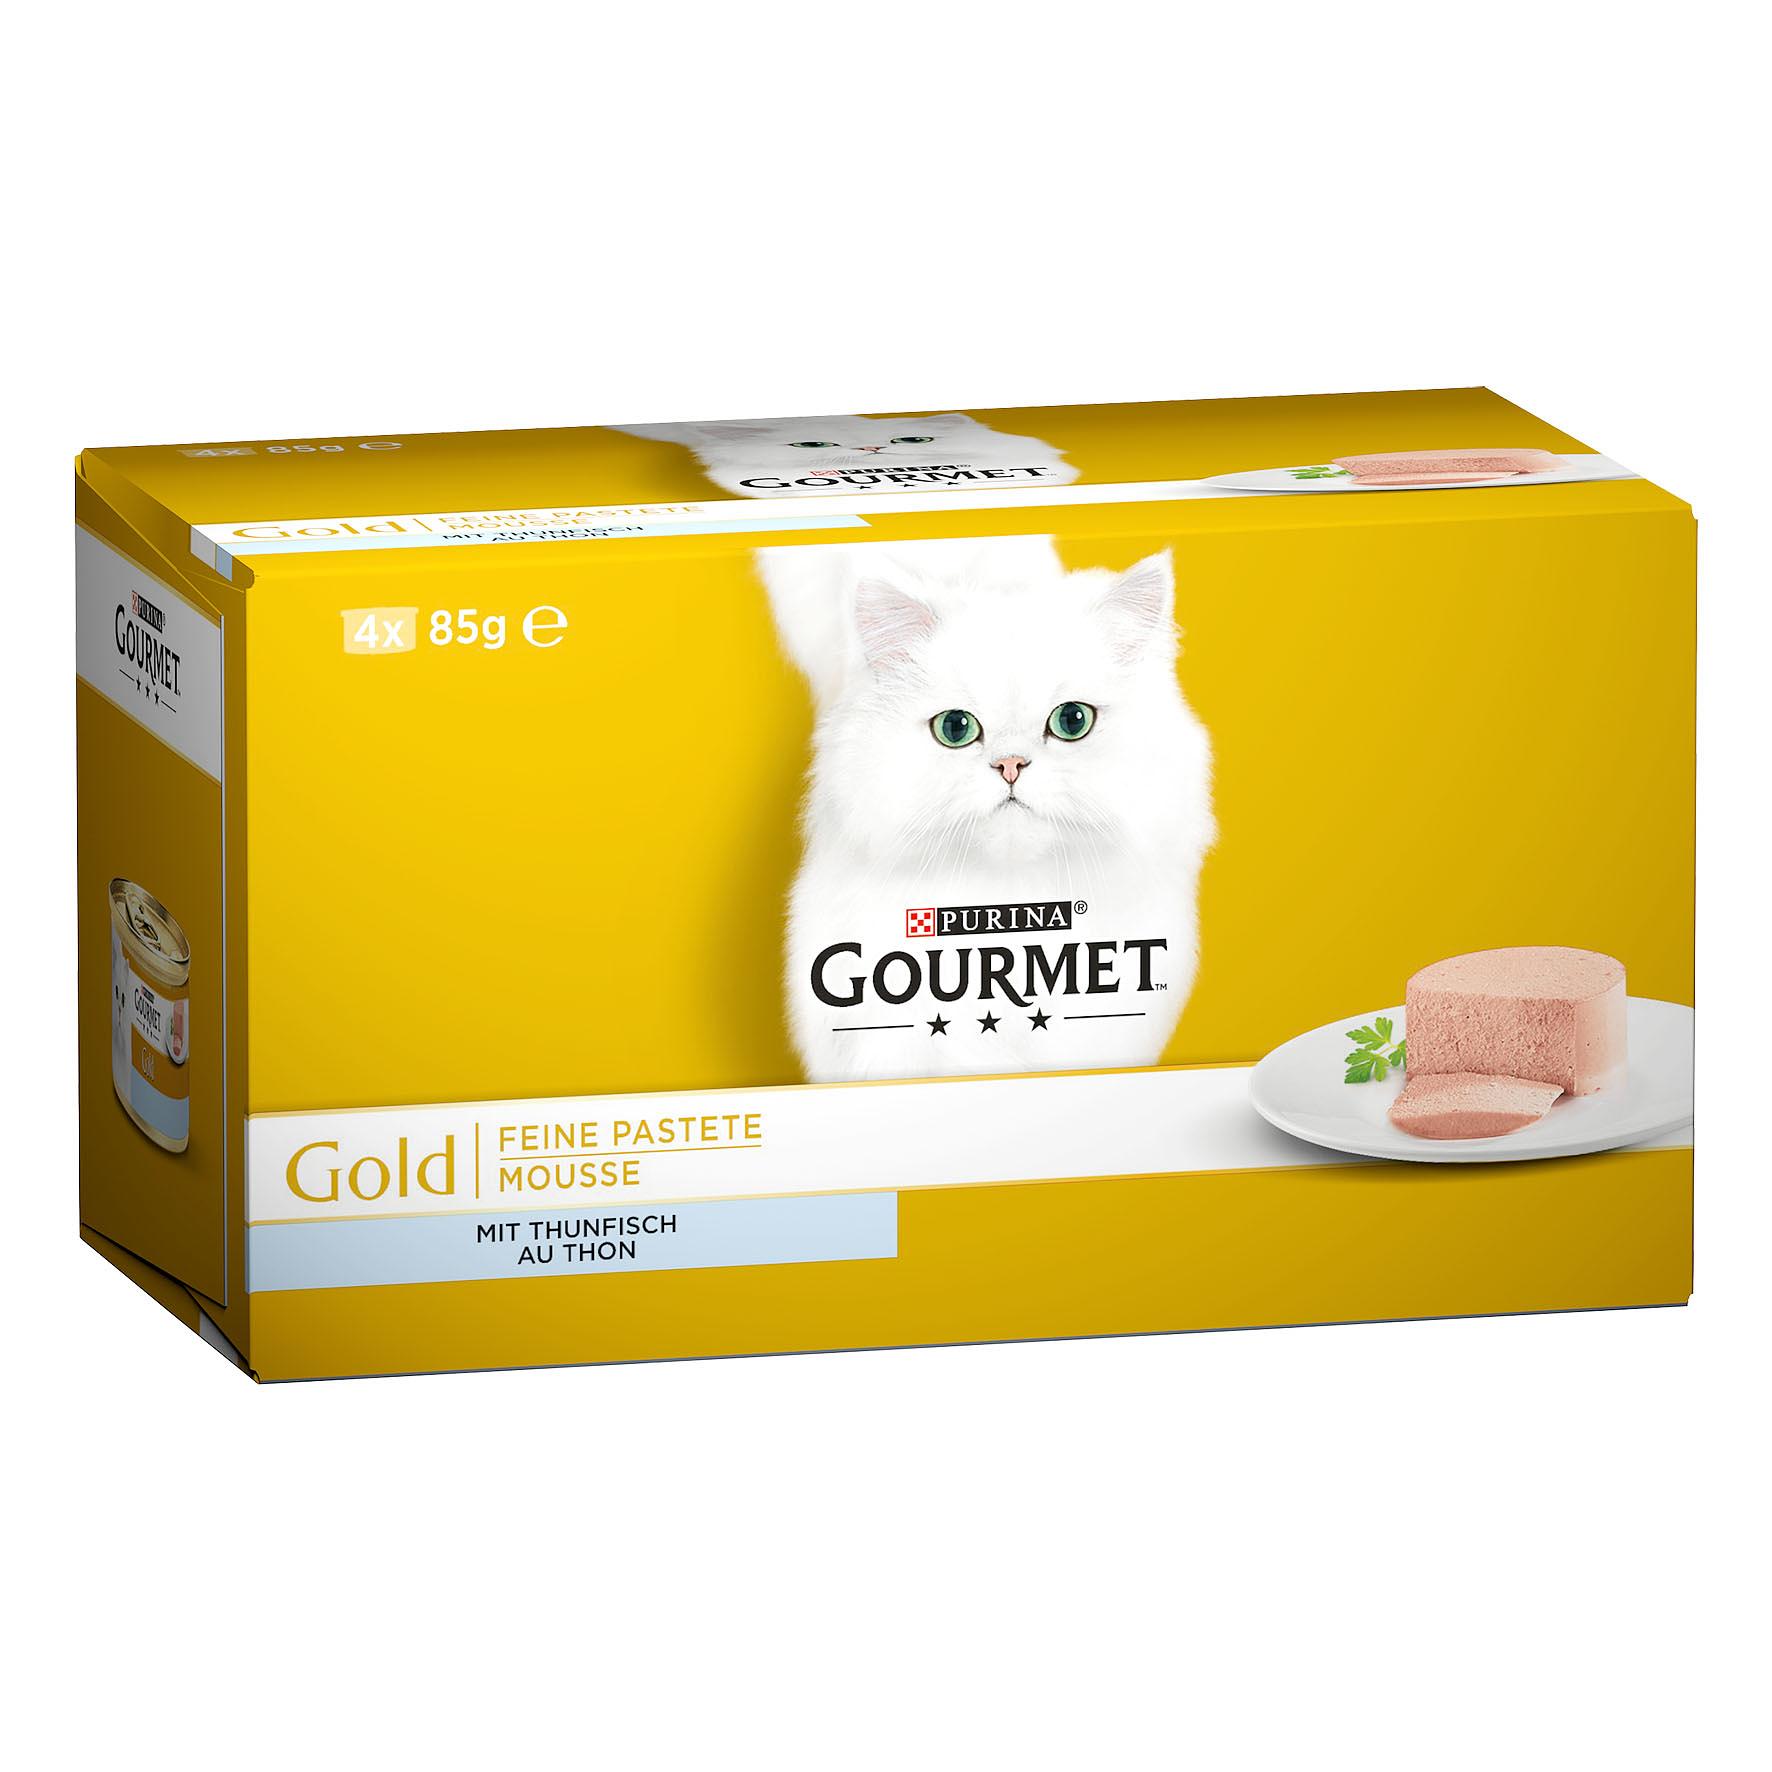 Gourmet Gold Feine Pastete Thunfisch, 4x85g